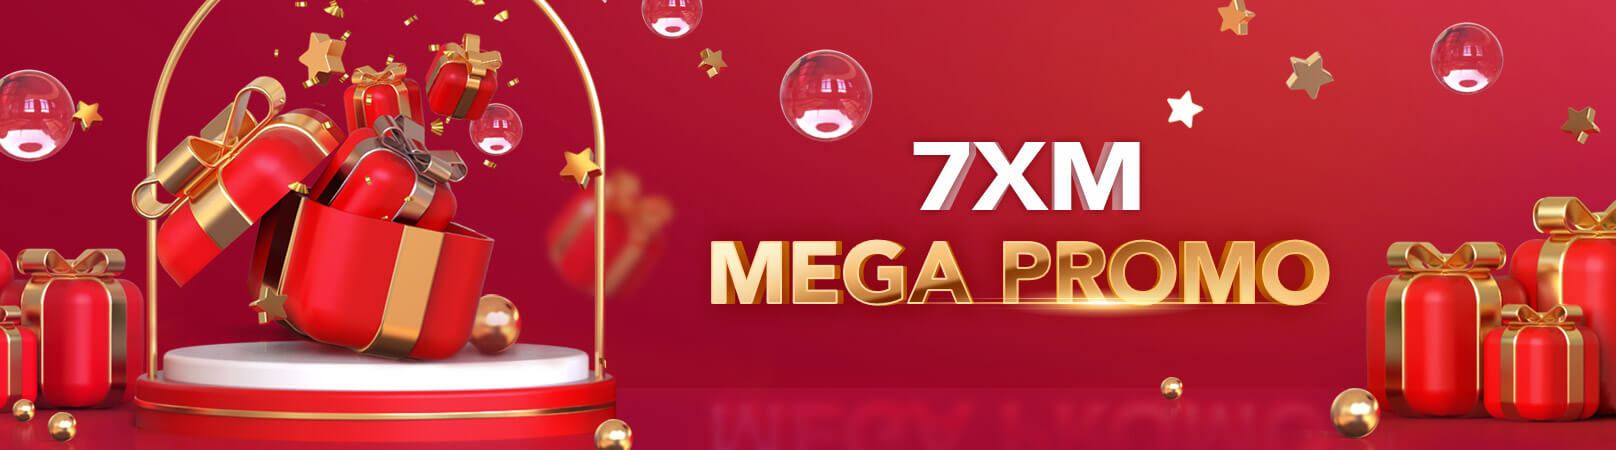 7XM - mega promo